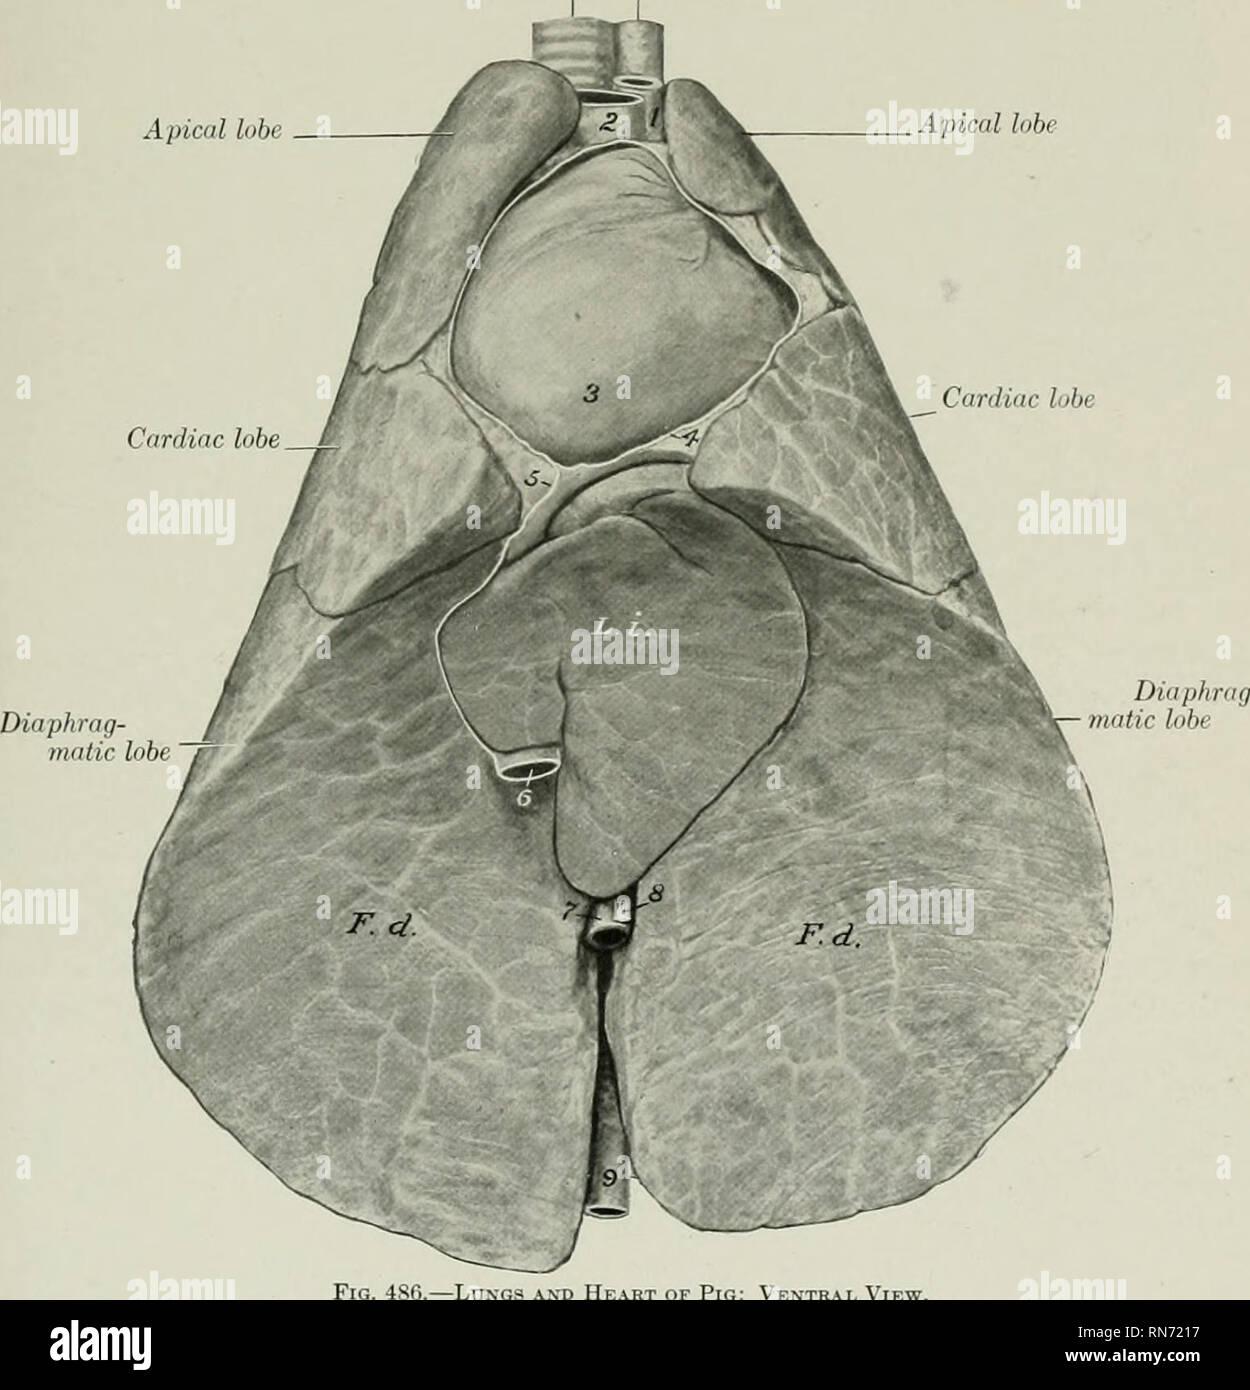 . Die Anatomie der Haustiere. Veterinär Anatomie. Der Thorax und der PLEURA - DIE LUNGE 547 DER THORAX und PLEURA Die Rippen sind im Allgemeinen stark in den meisten verbesserte Rassen gebogen, so dass der Brustkorb ist gerundet. Die Pleural sacs erweitern nach vorn in die erste Interkostalraum. Die Diaphragmatica Linie der pleural Reflexion beginnt oder ein wenig oberhalb der sternalen Ende des siebenten Rippe, und erstreckt sich in einem leichten Bogen bis über die Mitte der letzten Rippe, entlang der medial Gesicht, von denen es weiter. (Wenn ein 15. Rippe vorhanden ist - ein sehr häufig vorkommt - es wirkt sich nicht auf die Anordnung der Stockfoto